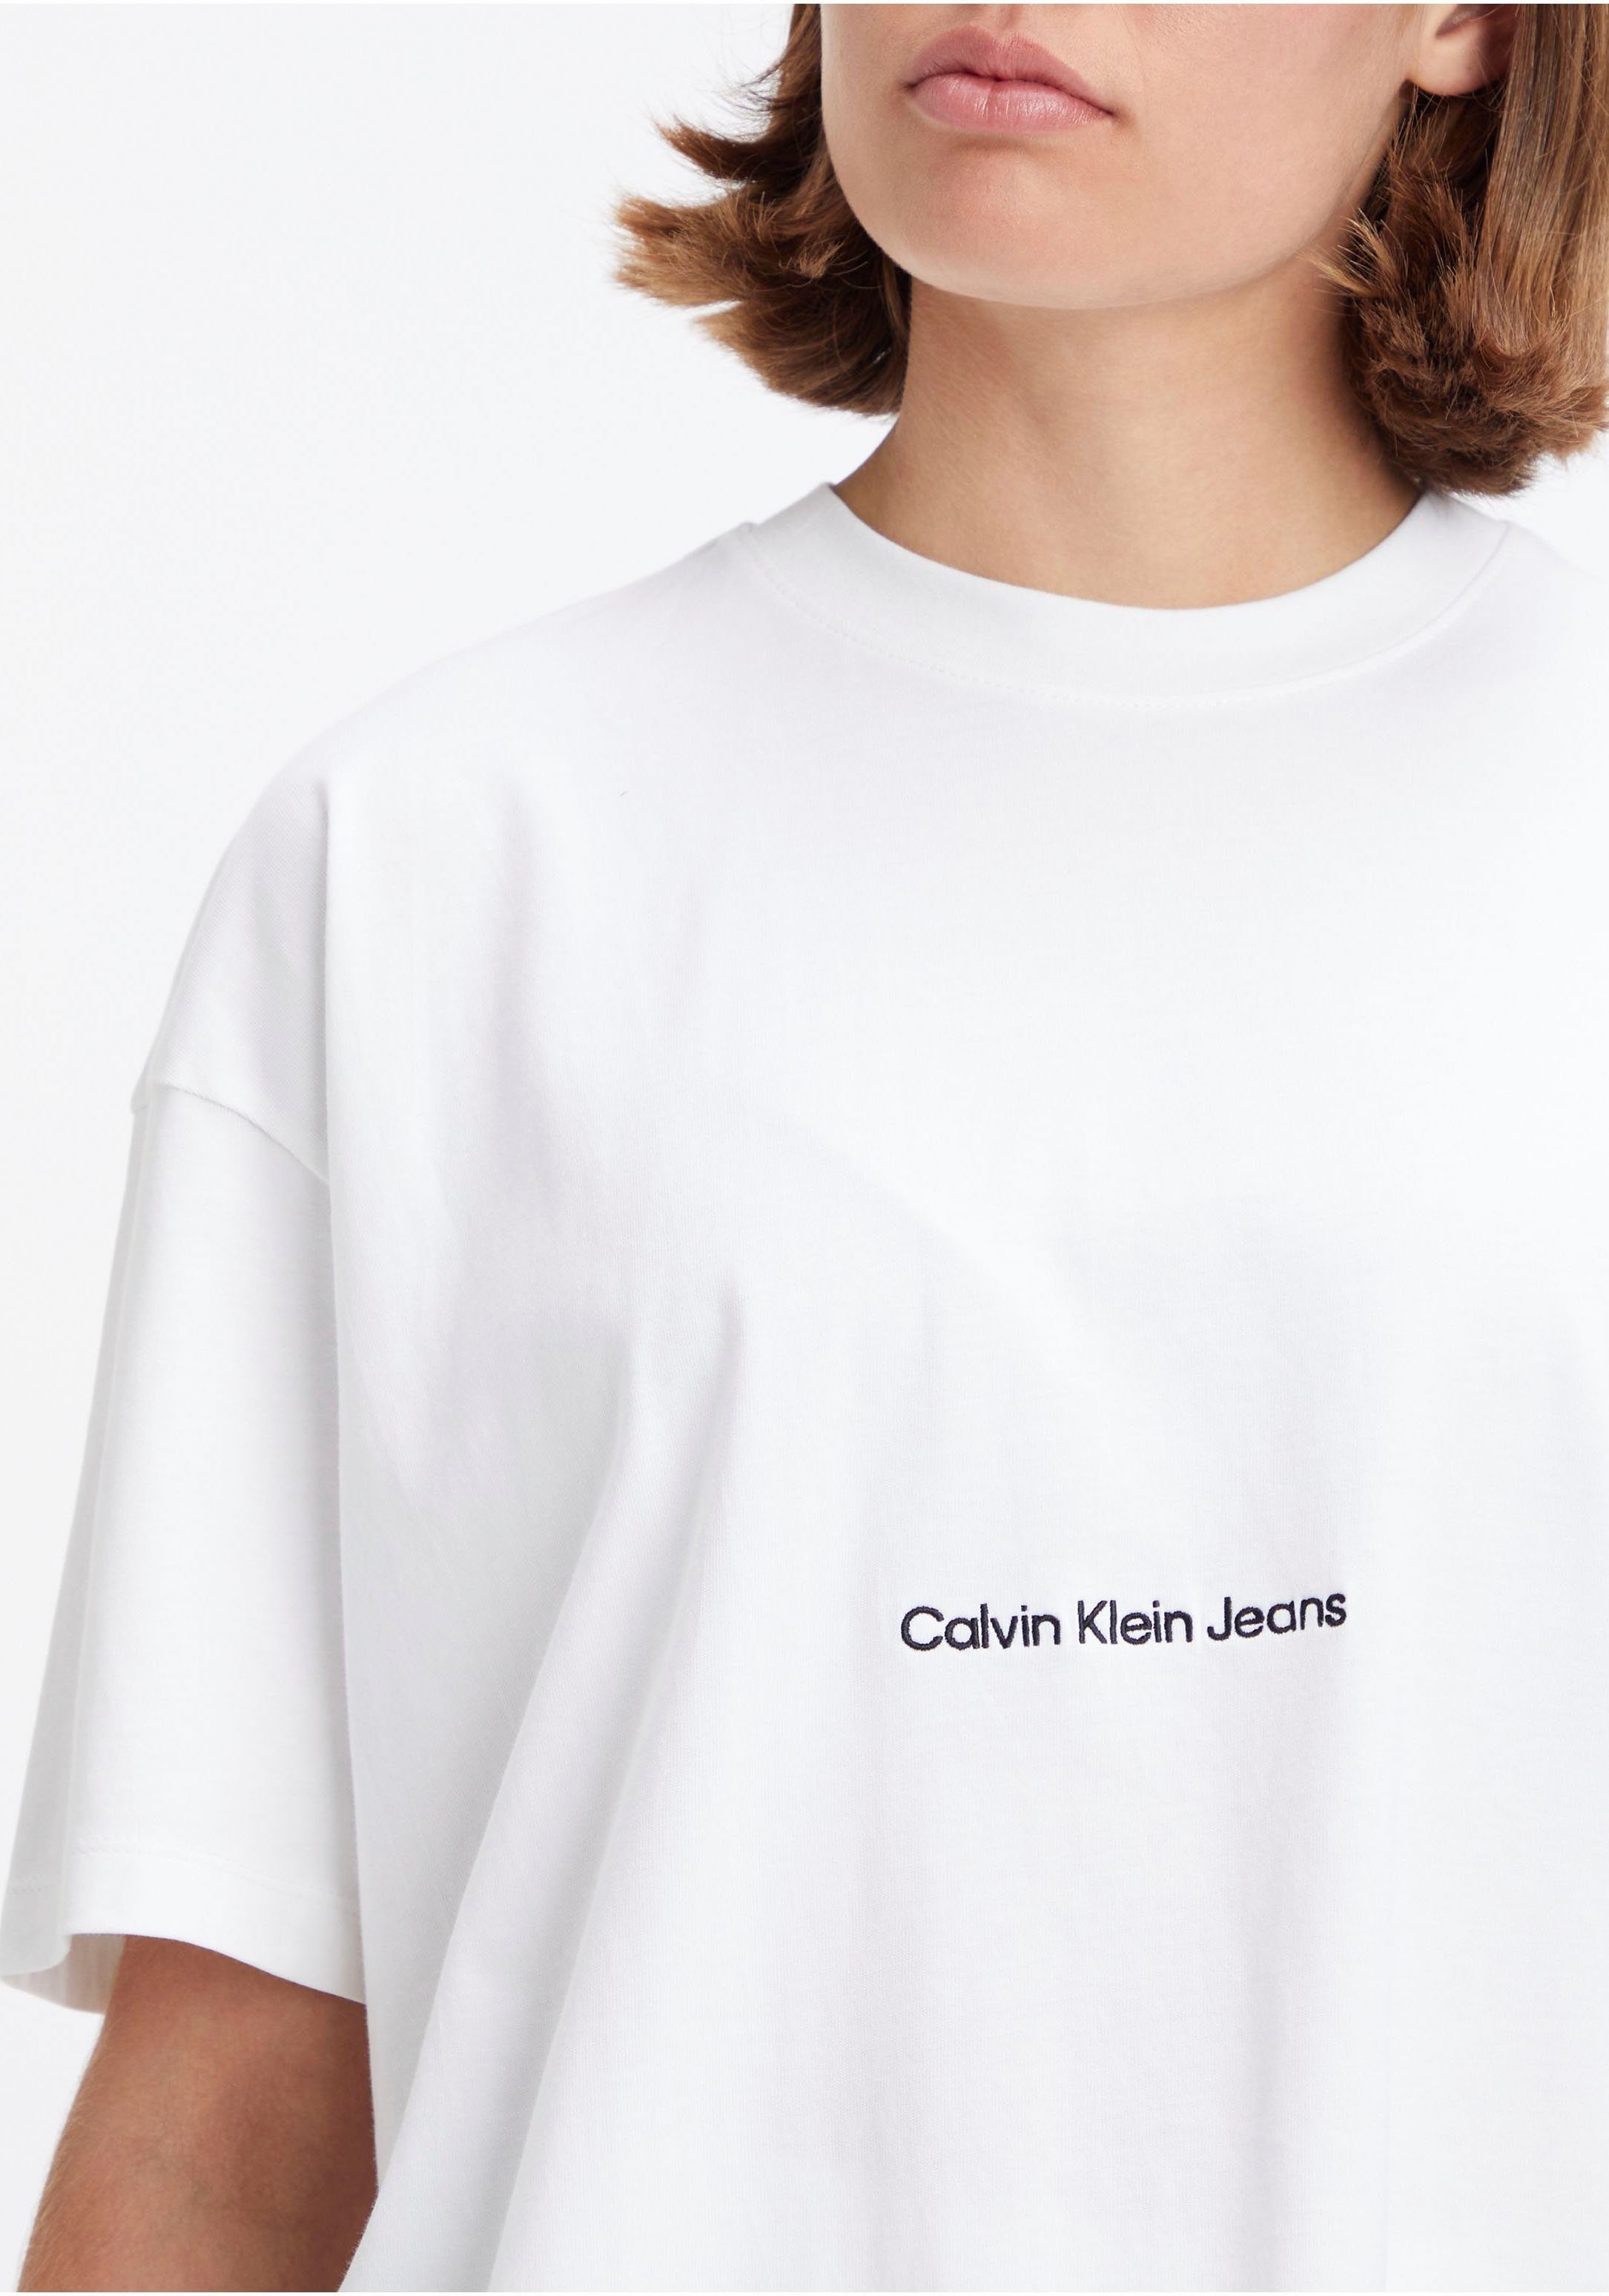 Jeans weiß in Calvin Klein T-Shirt Oversized-Passform